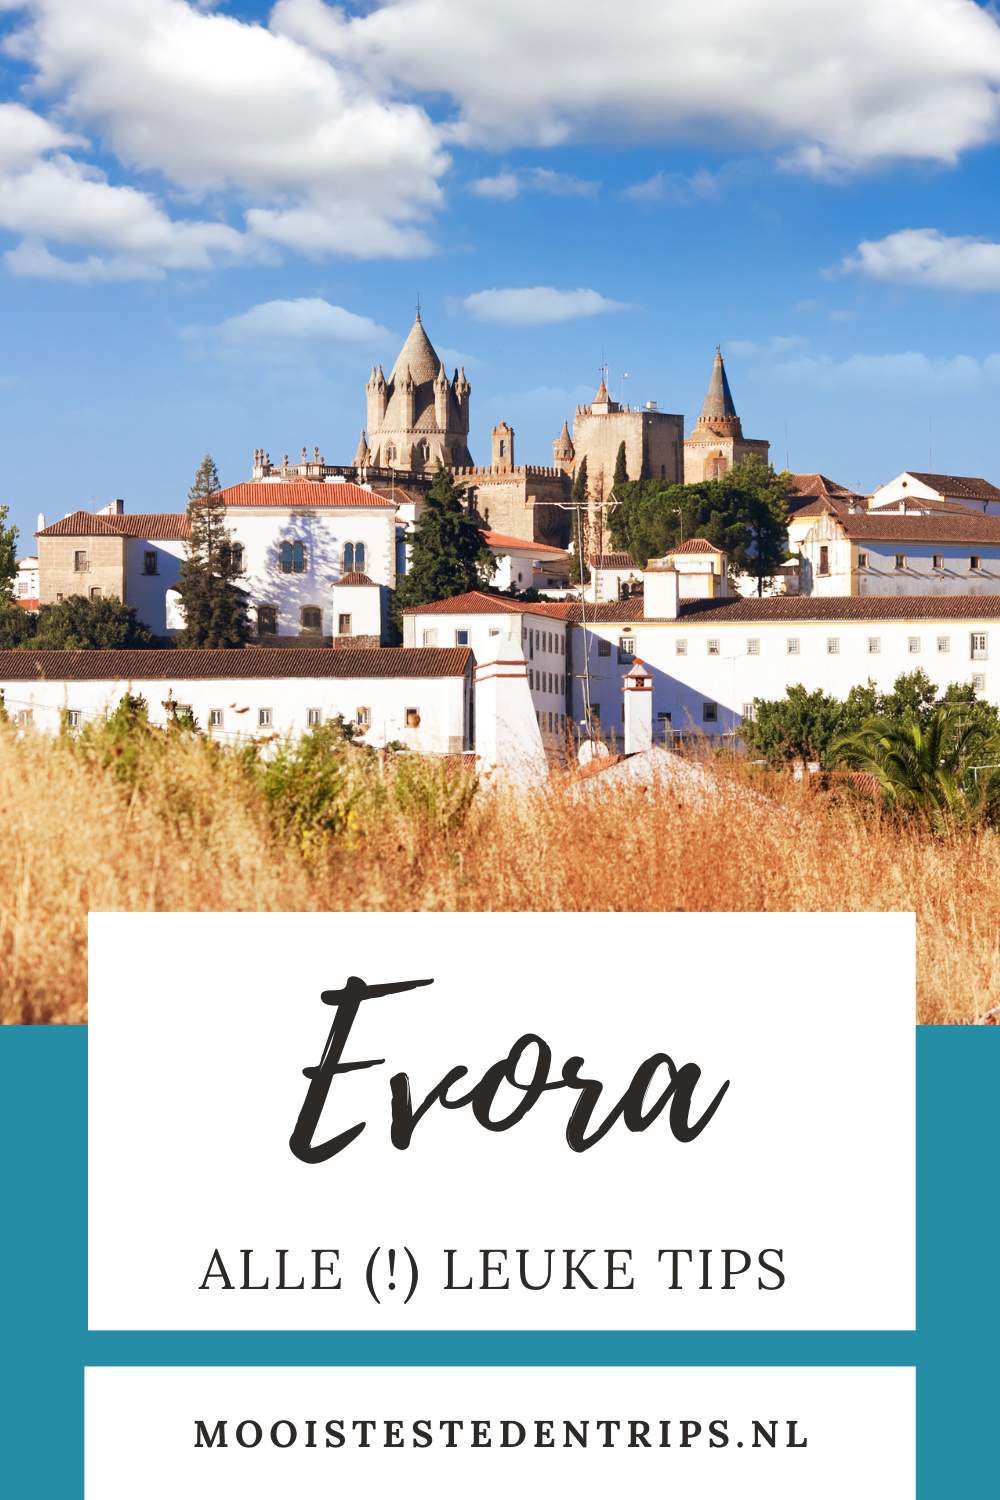 Evora, Portugal: ontdek de mooiste bezienswaardigheden in Evora, Alentejo | Mooistestedentrips.nl